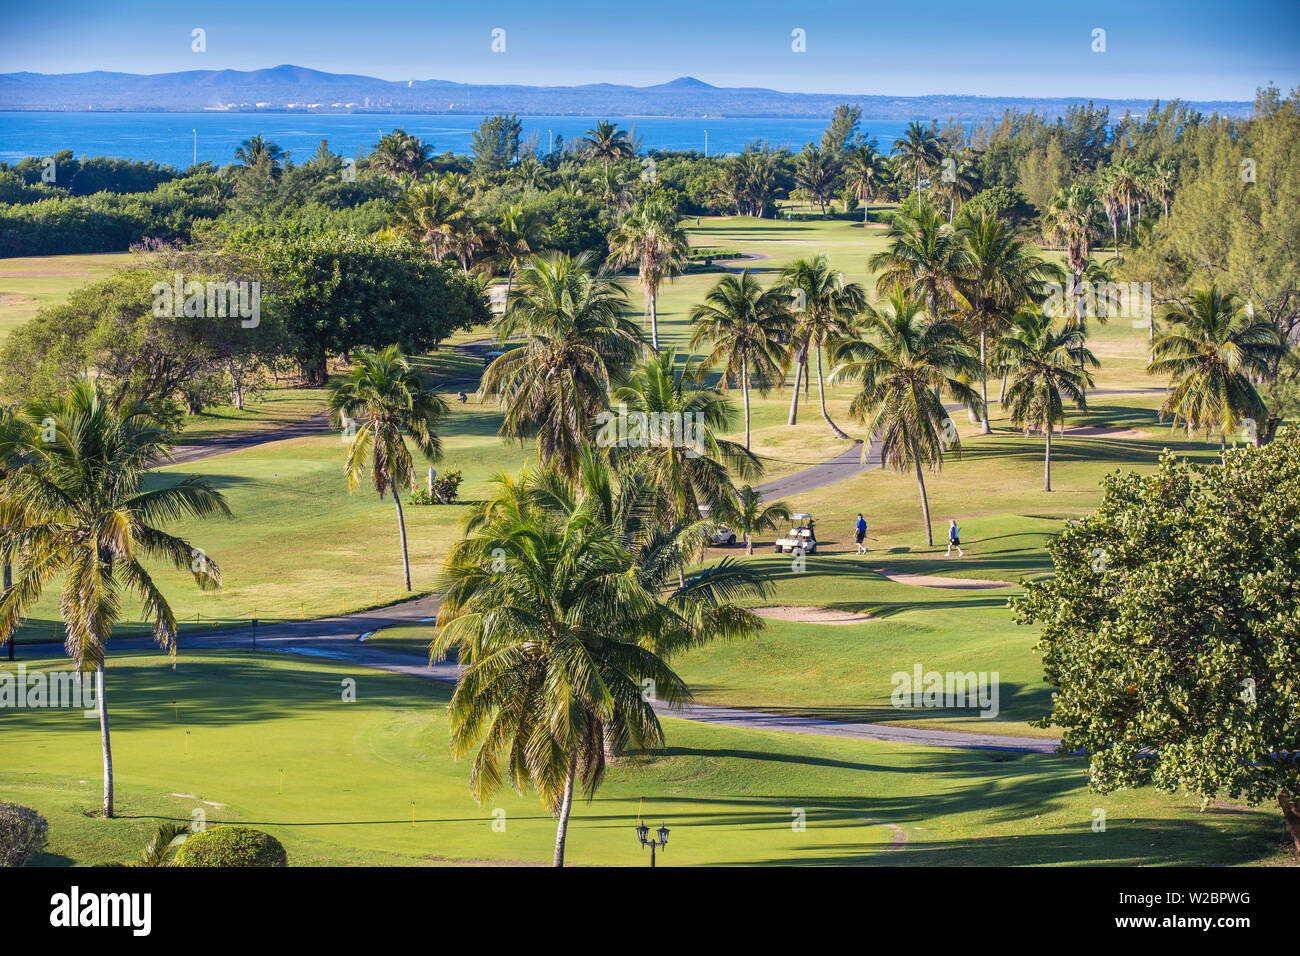 Cuba, Varadero, Varadero Golf Course Stock Photo - Alamy